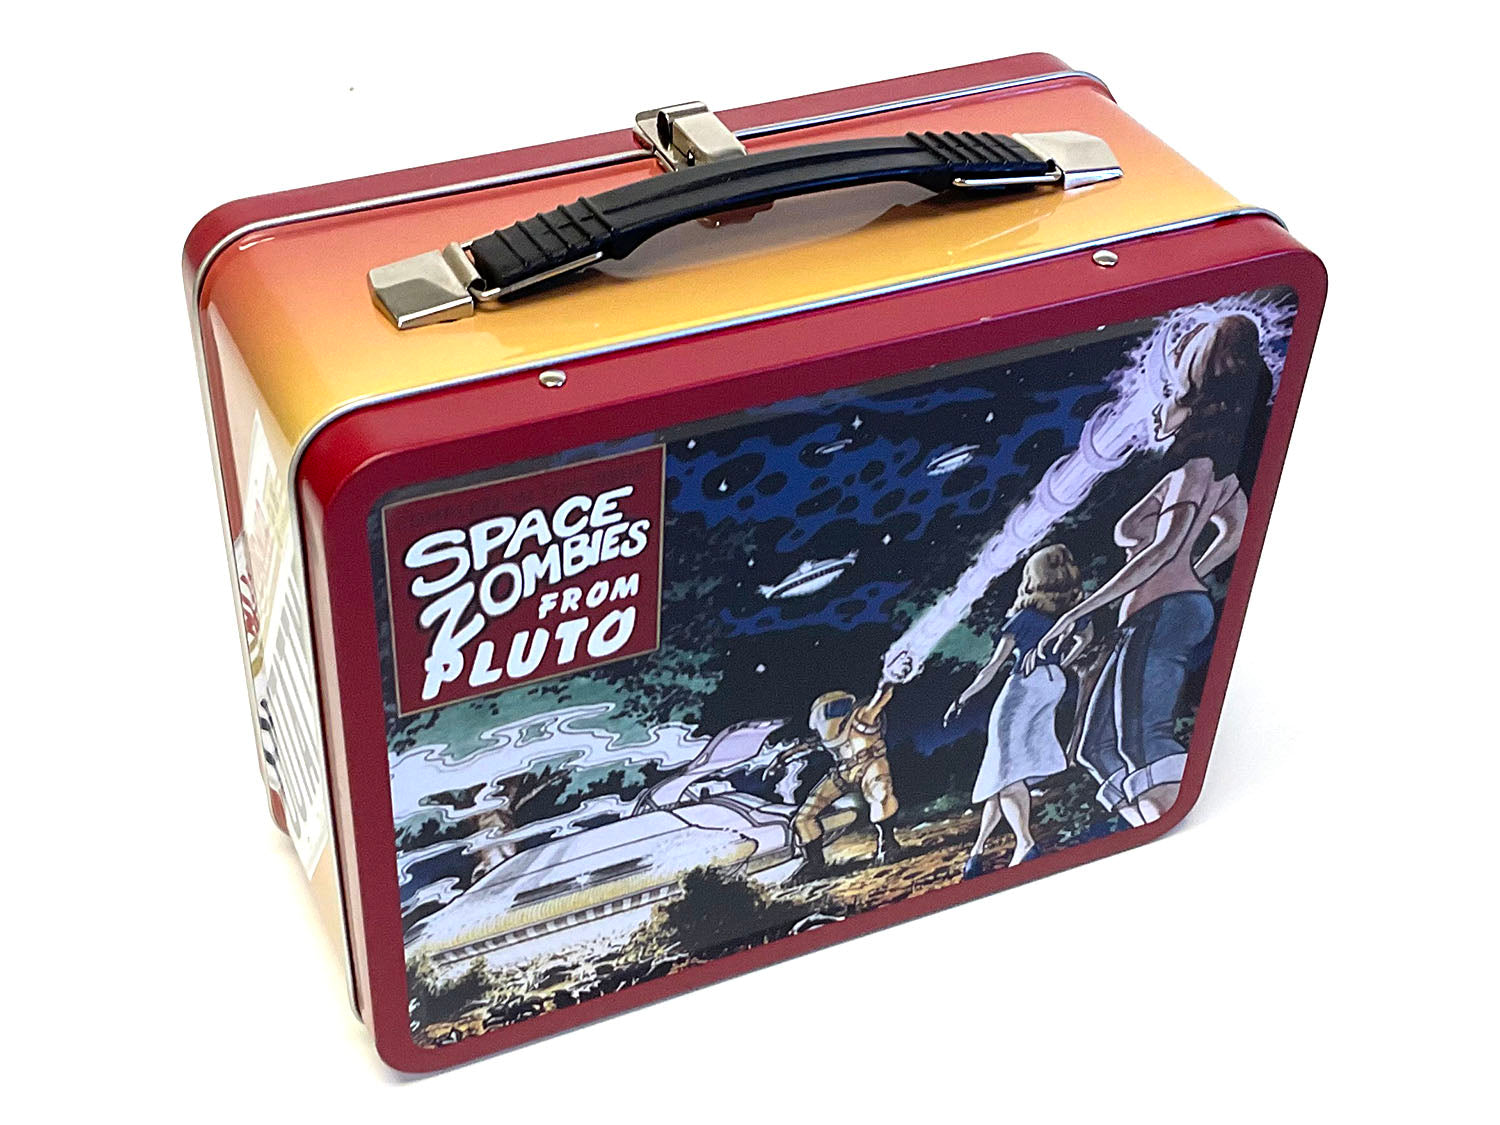 Star Wars Tin Lunch Box